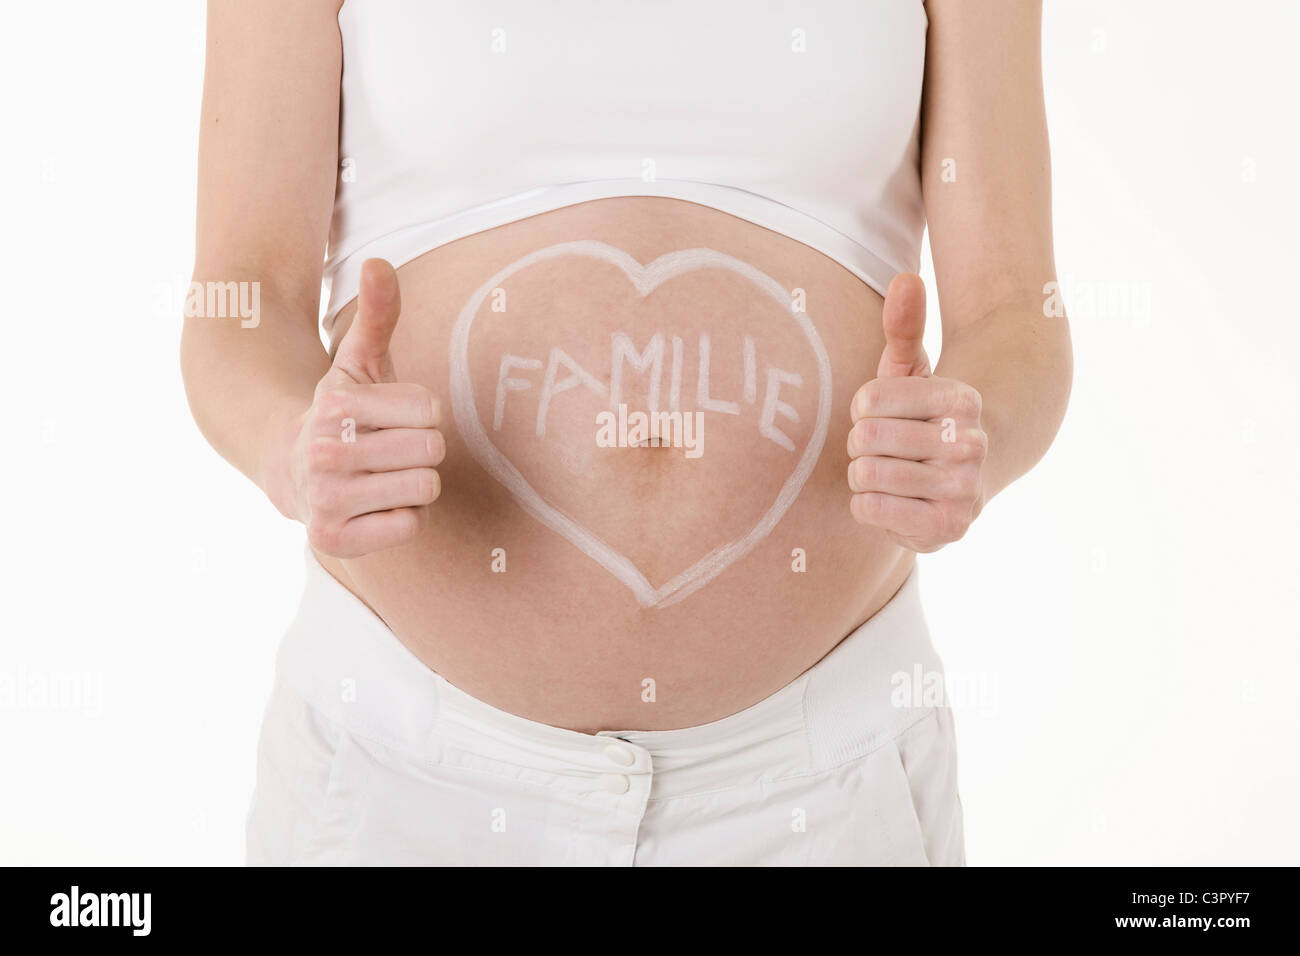 Herzform auf schwangere Frau Bauch mit Text, zeigt Daumen hoch Zeichen gezeichnet Stockfoto